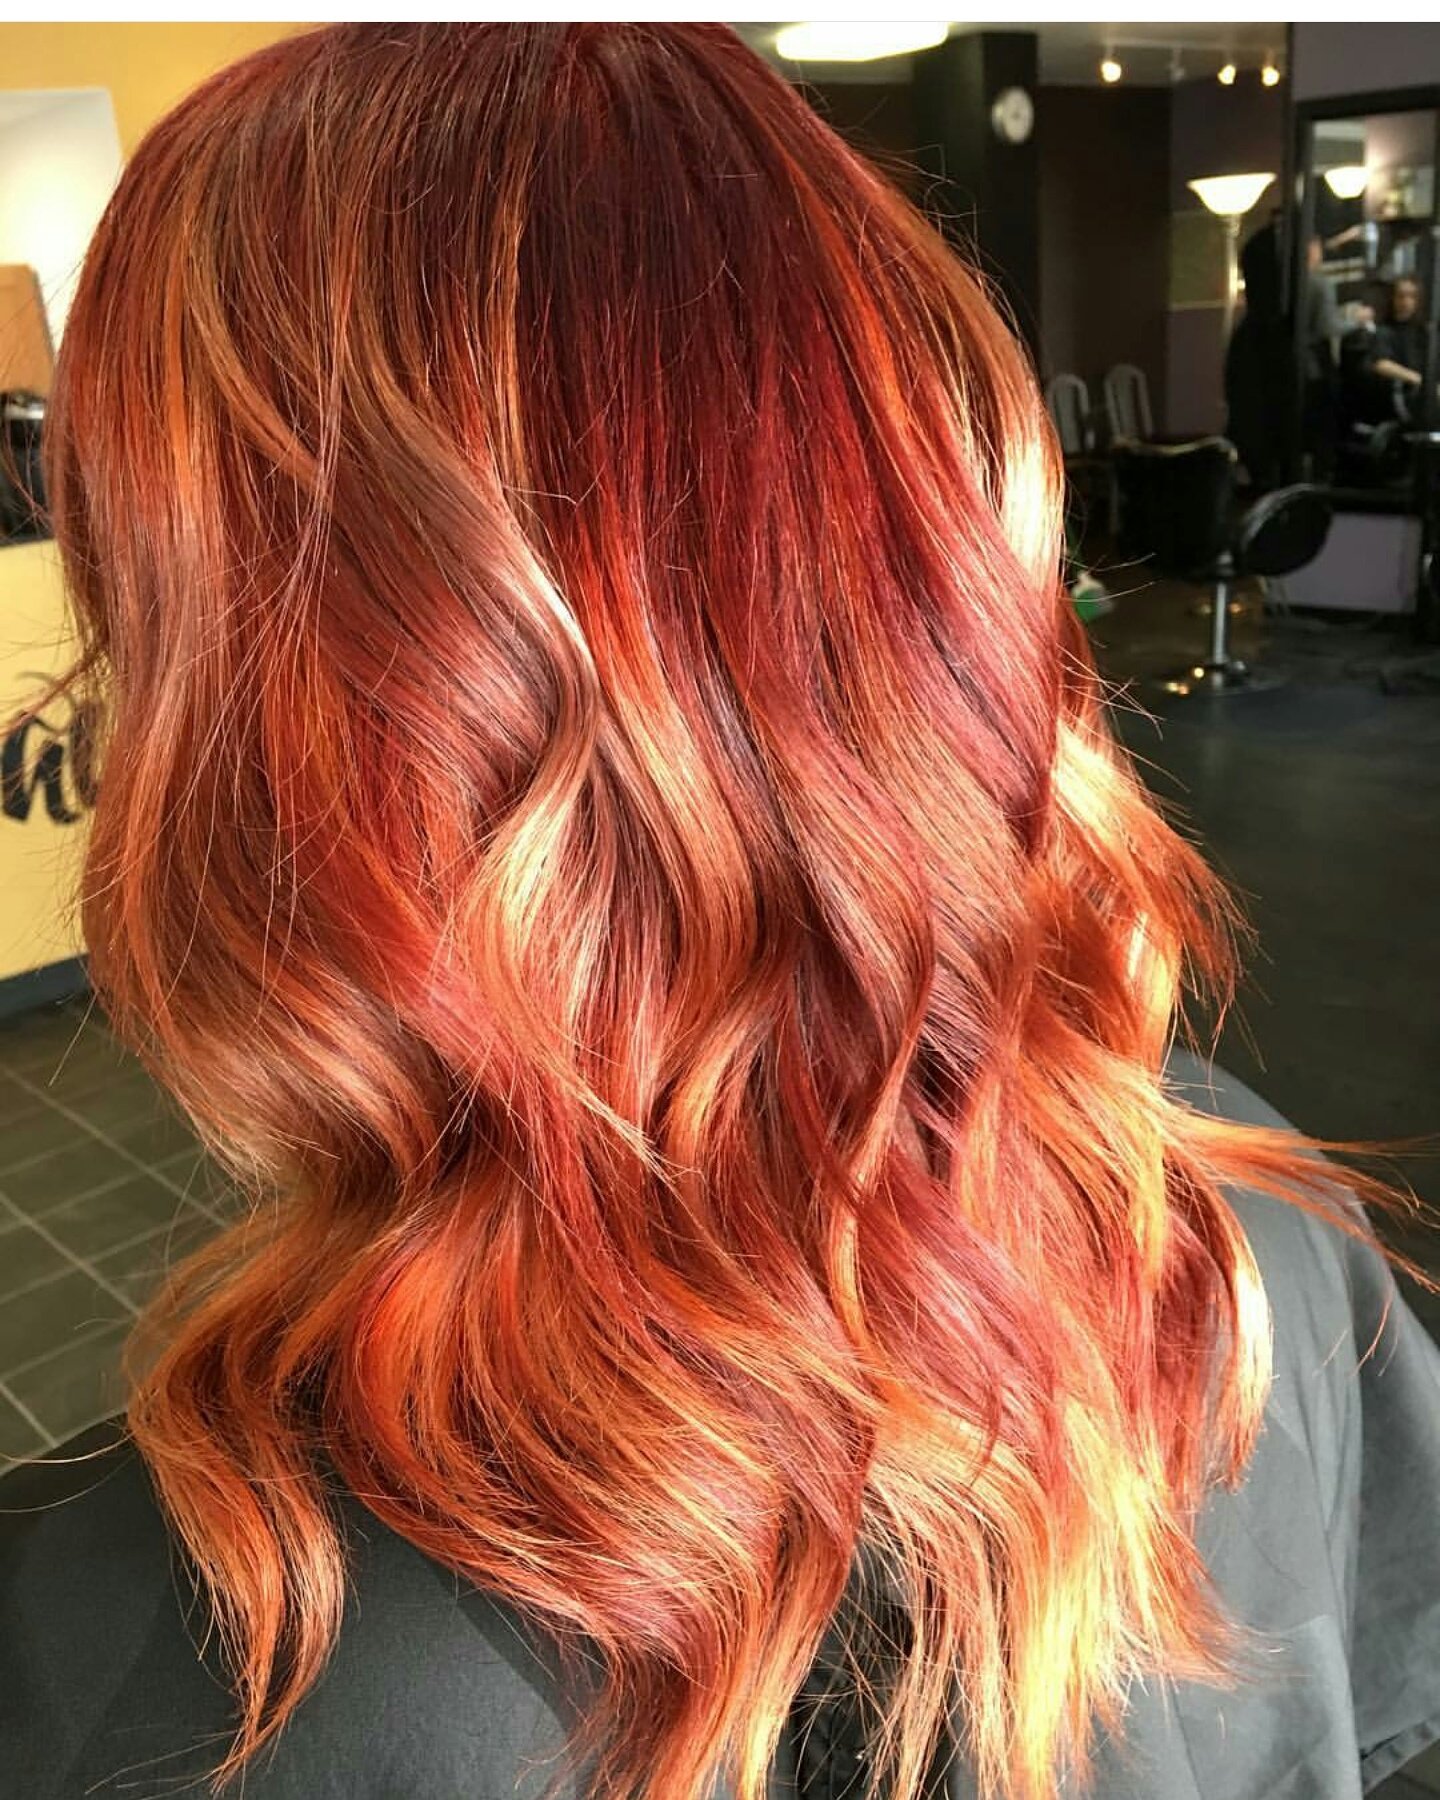 светлые пряди на рыжих волосах фото